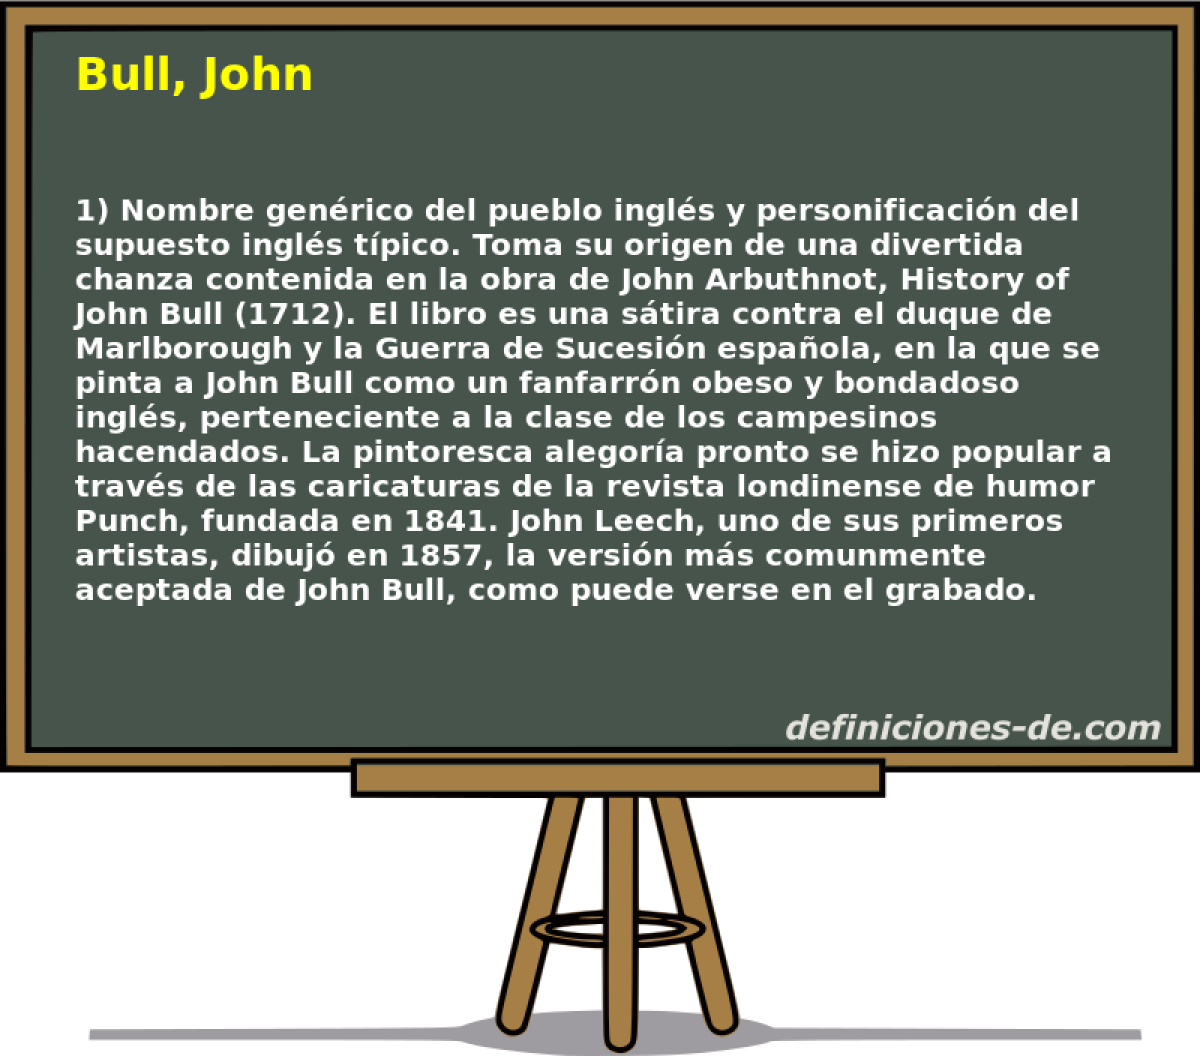 Bull, John 